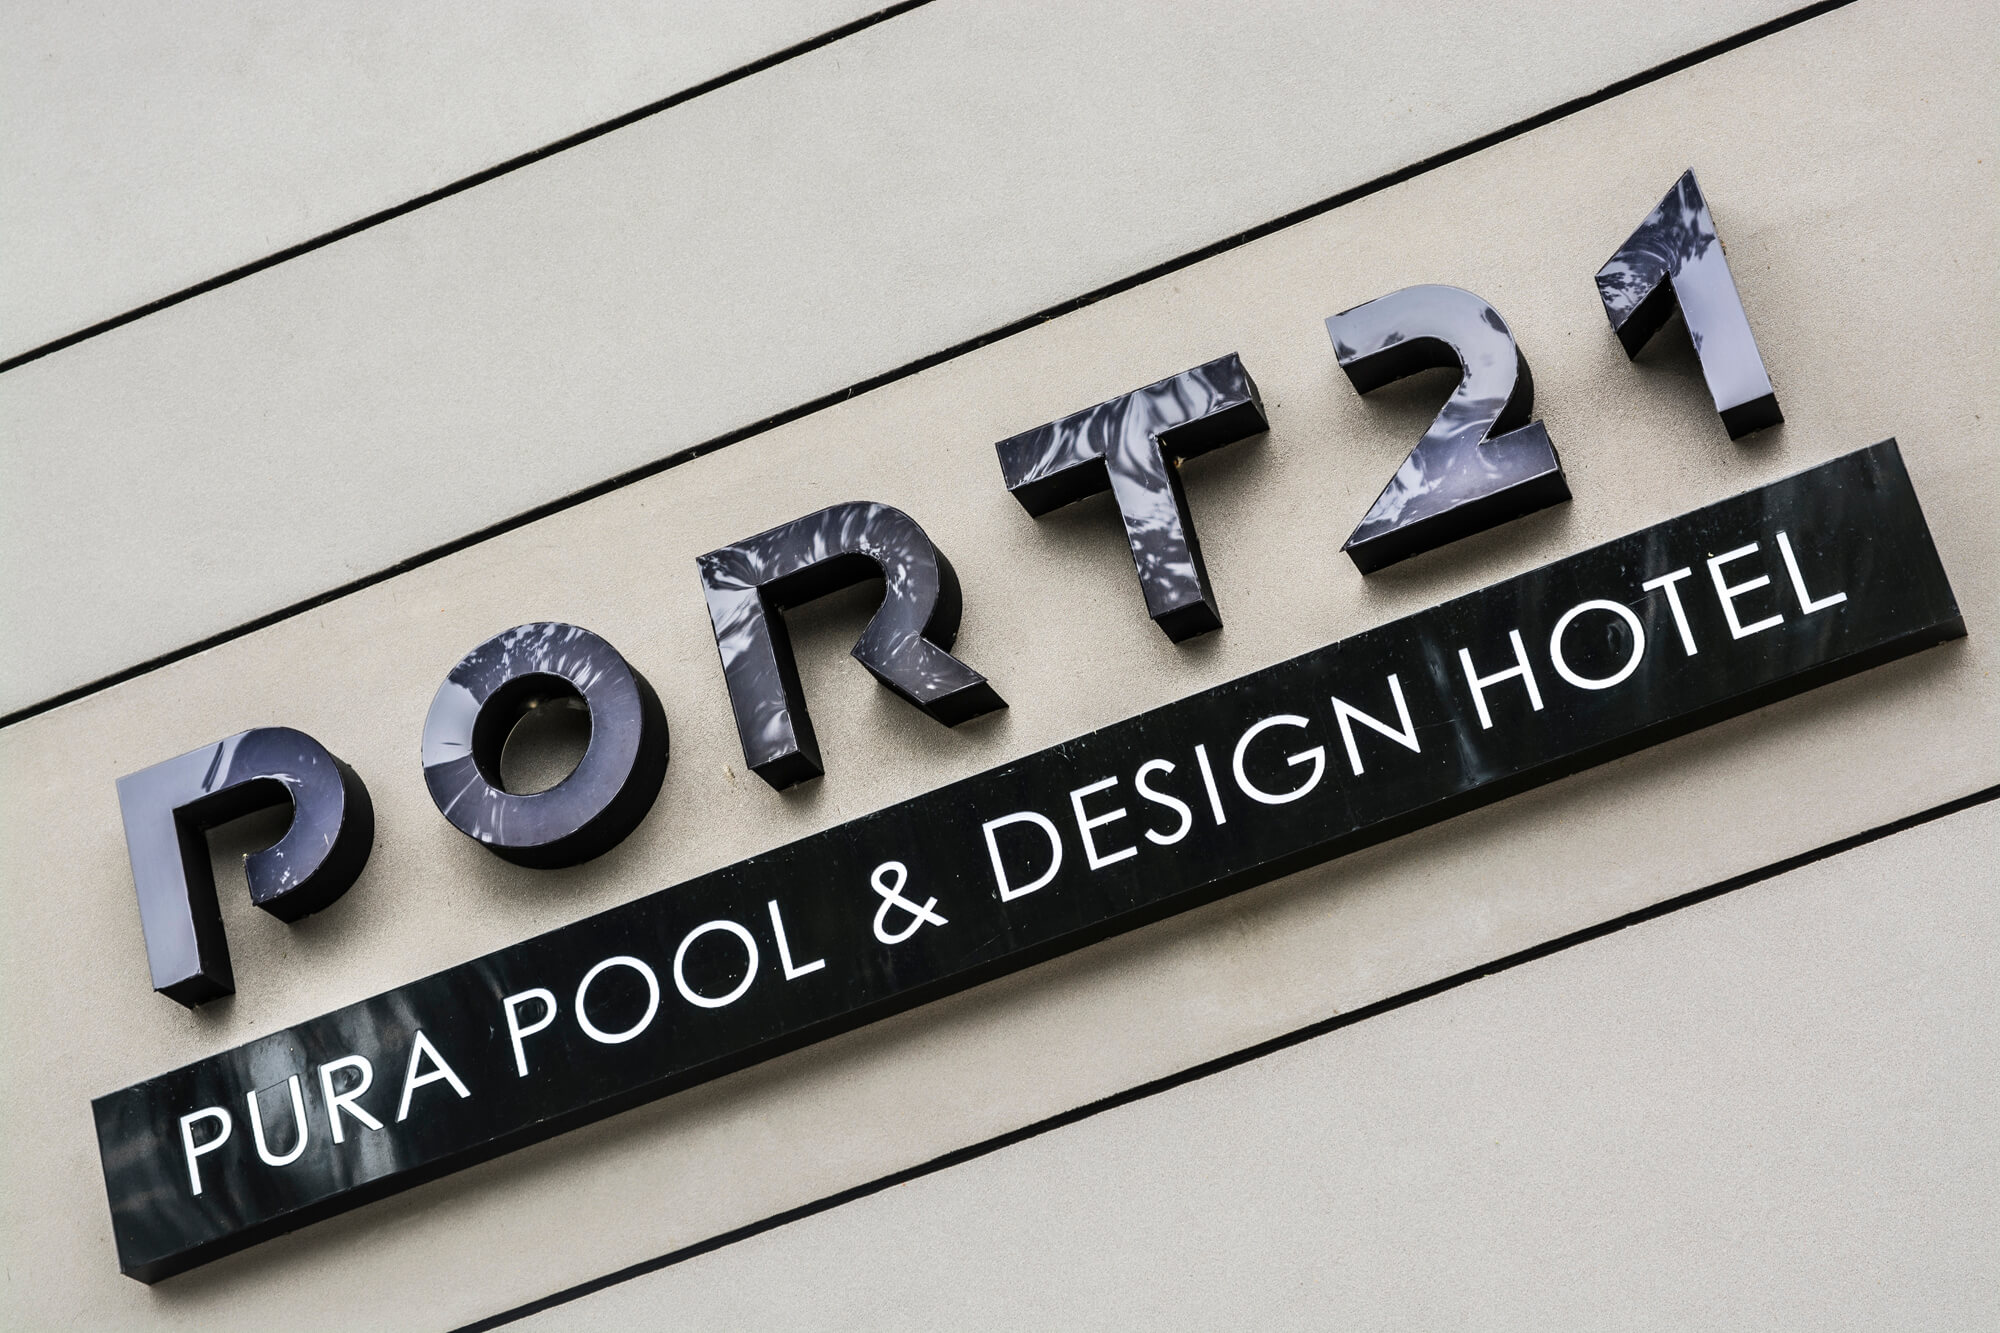 Port 21 - Port 21 - Lettres lumineuses en 3D placées sur le mur, réalisées en plexiglas.